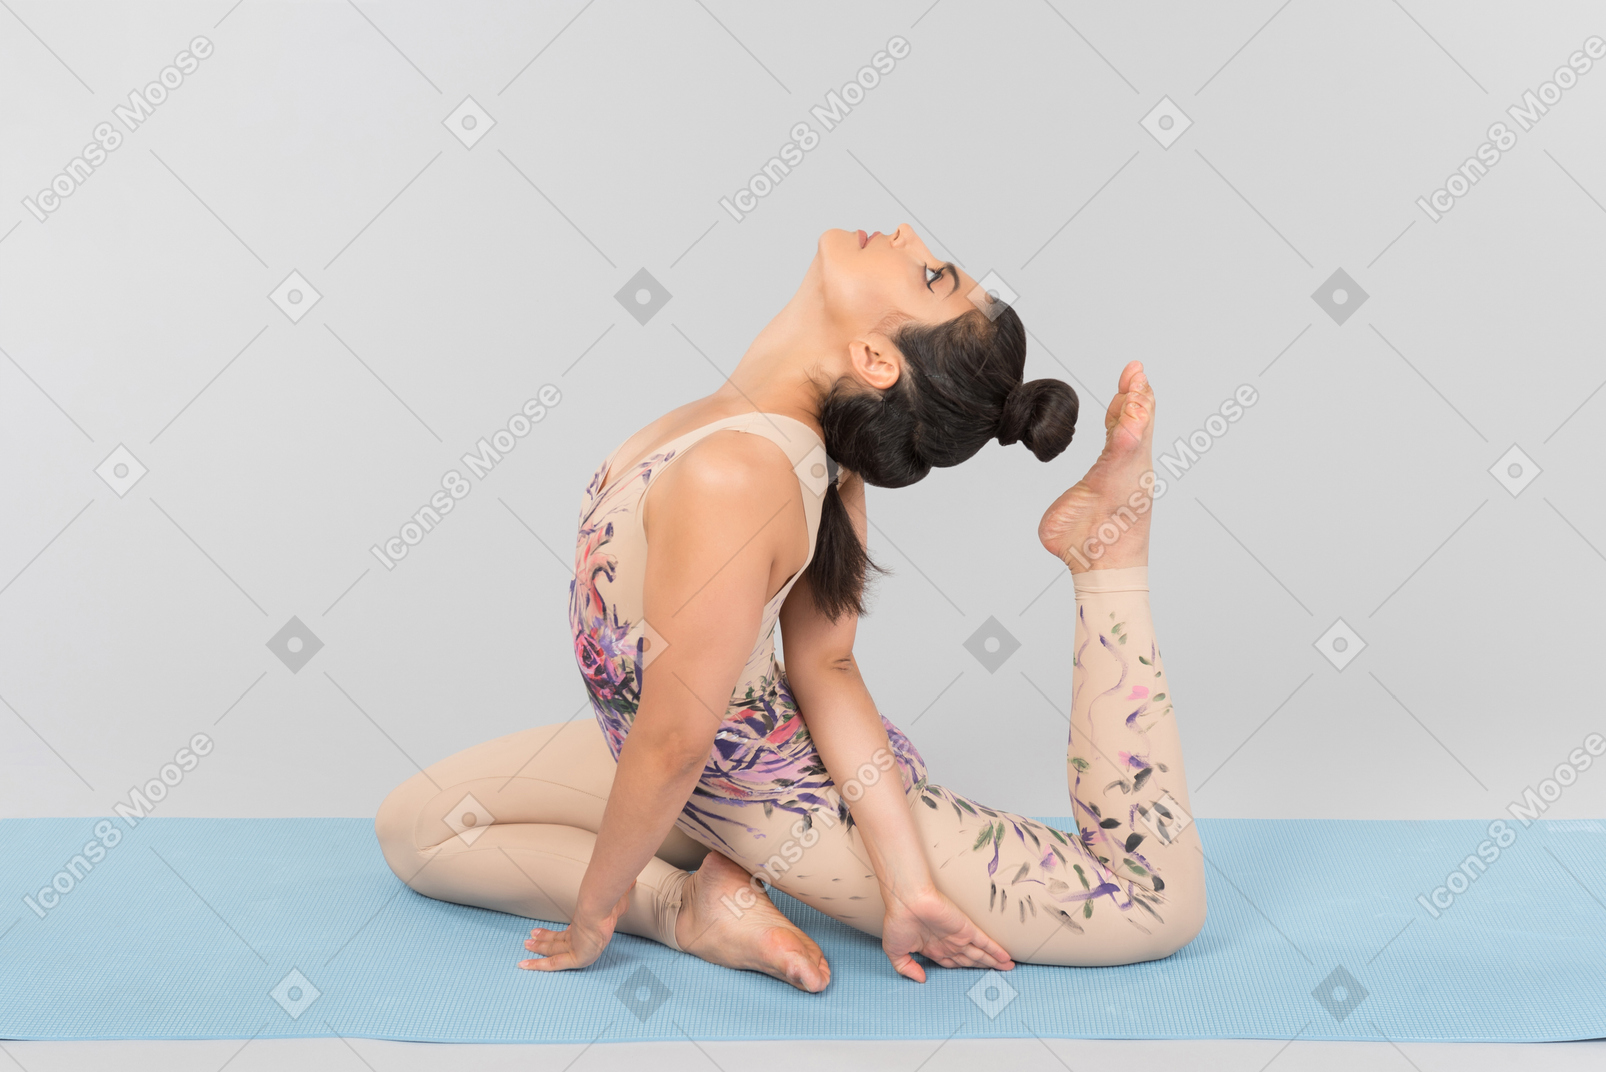 Junge indische turnerin, die auf yogamatte liegt und fast ihren kopf mit einem zeh berührt